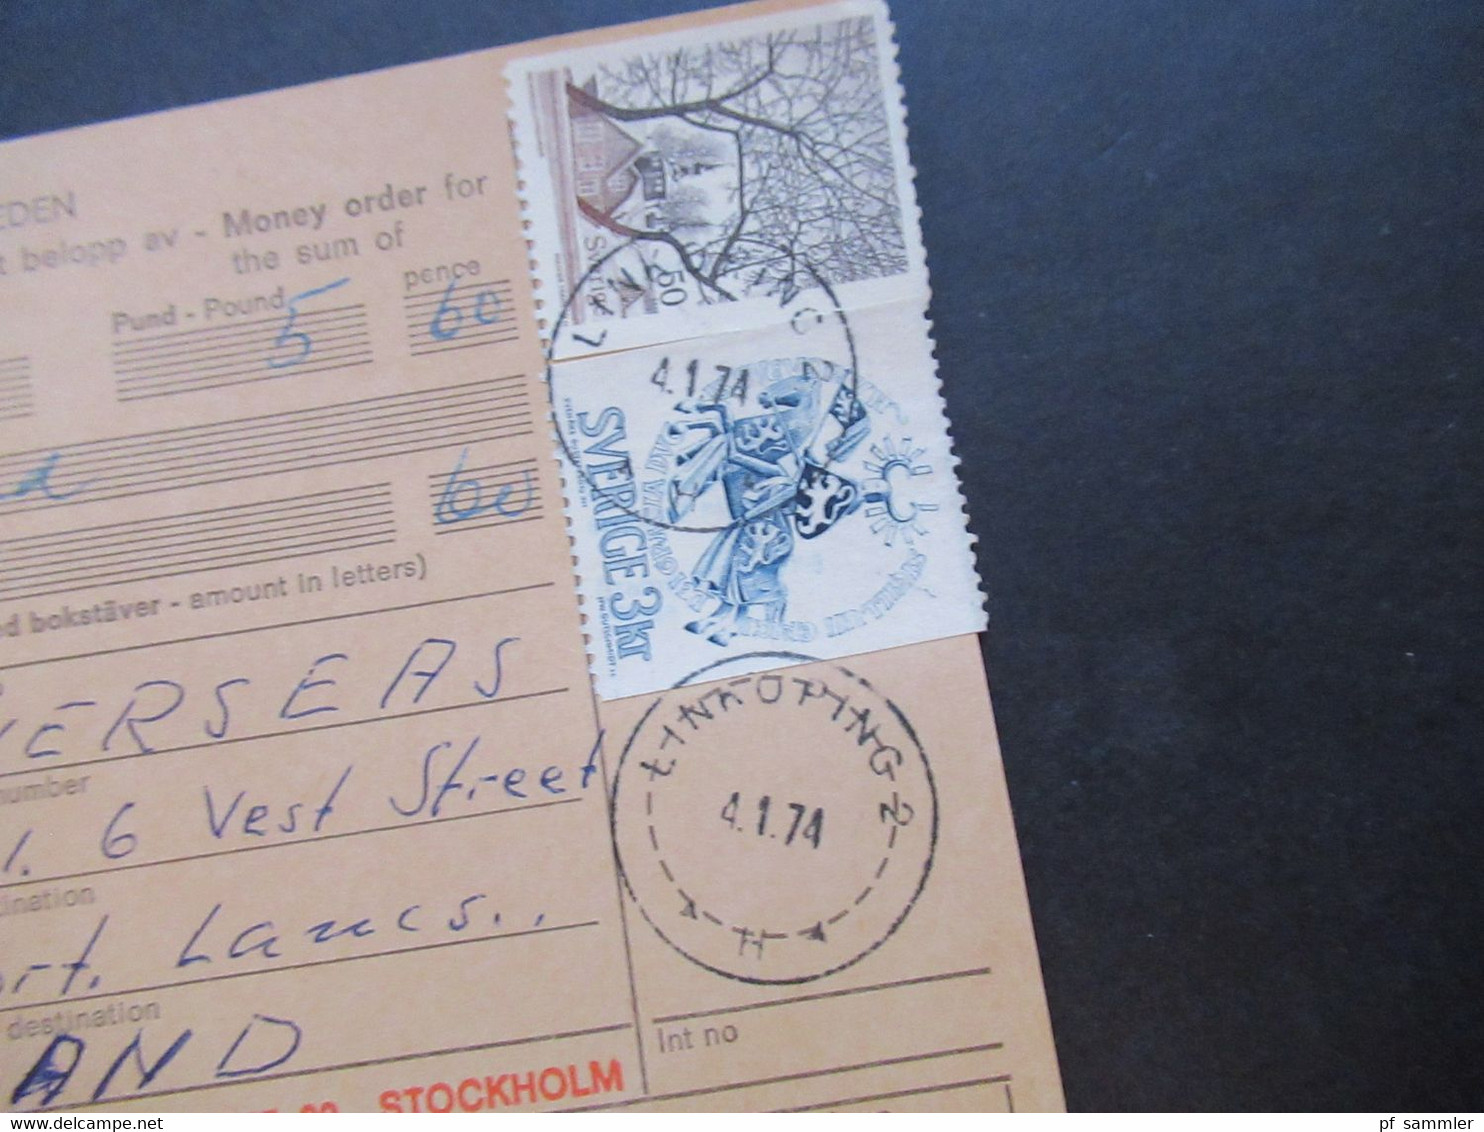 Schweden 1970 / 74 Paketkarten 7 Stück davon 2x nach England violetter Stempel Hämtas pä postanstalten Kristallvägen 1